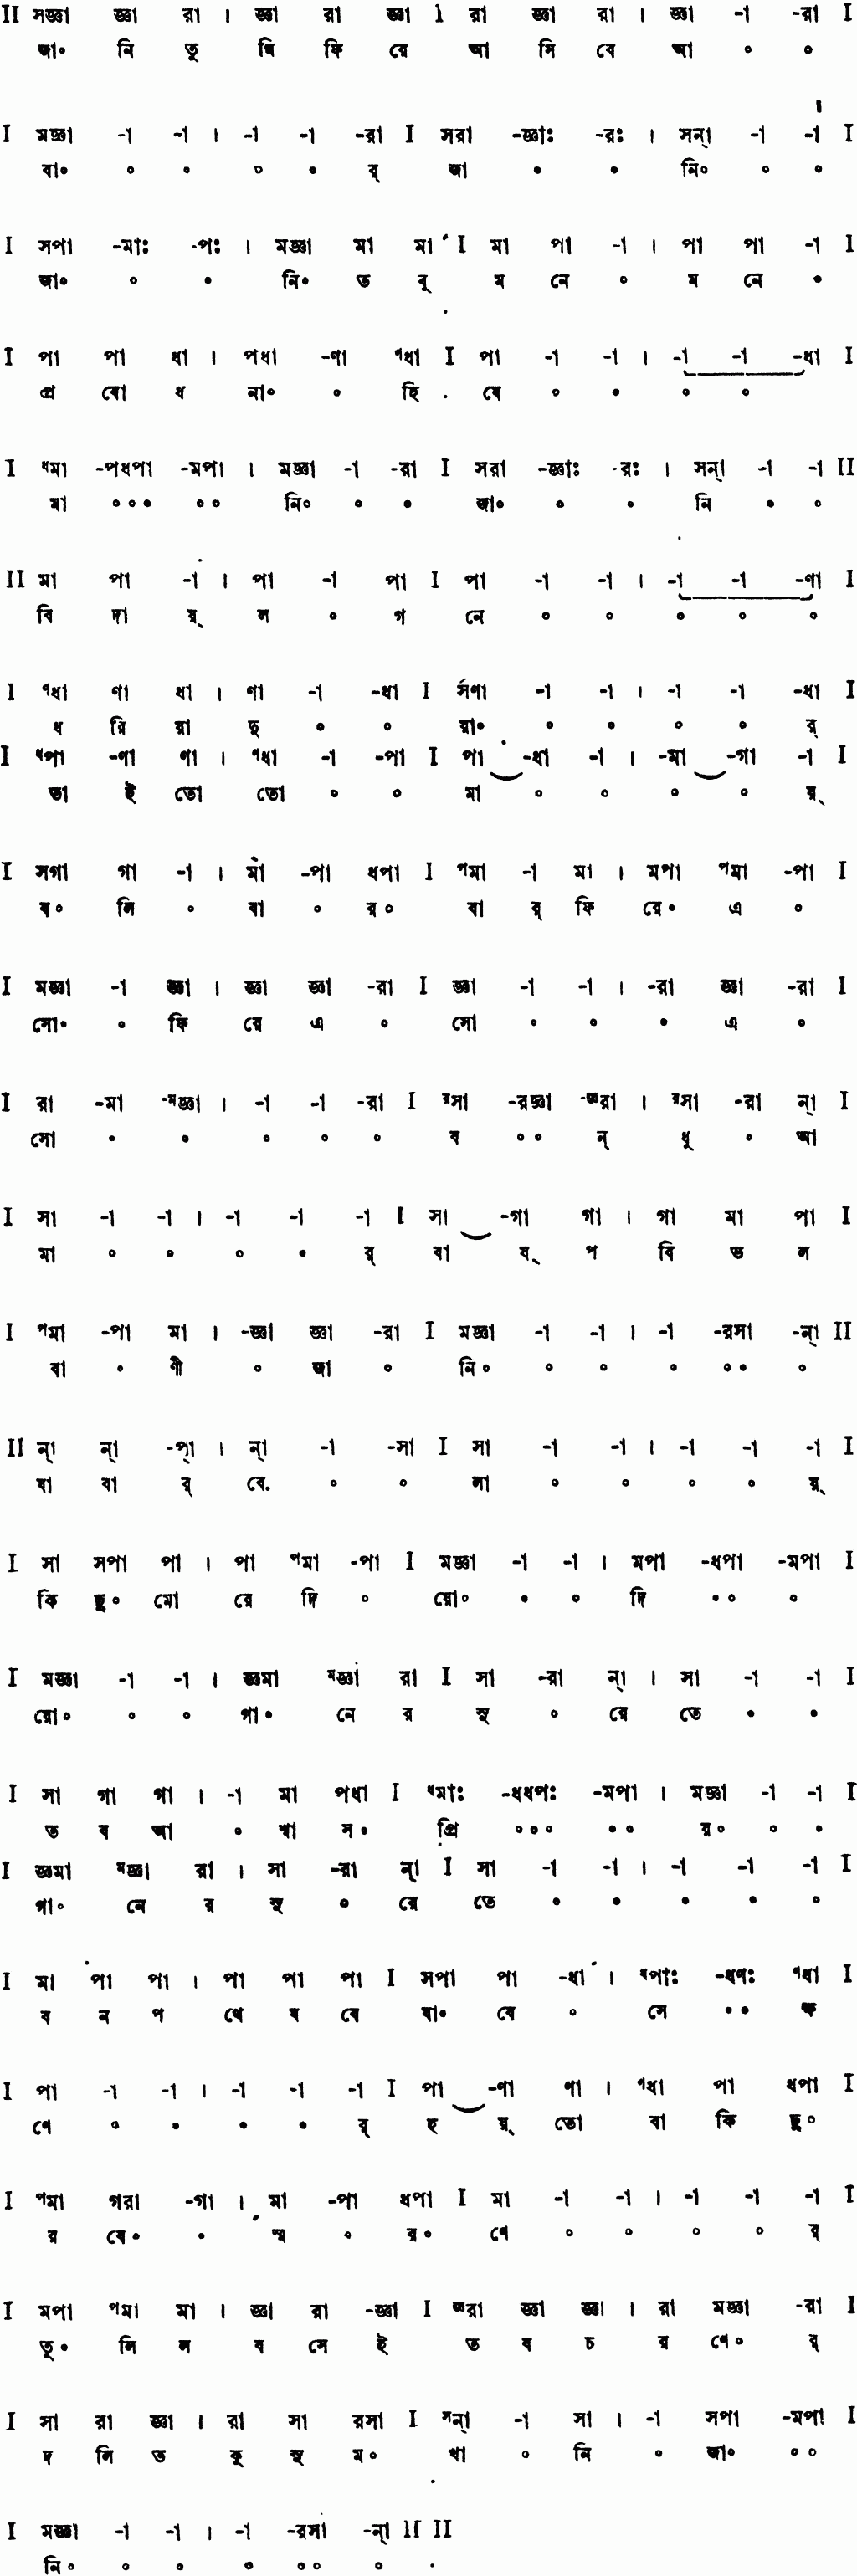 Notation jani tumi phire asibe